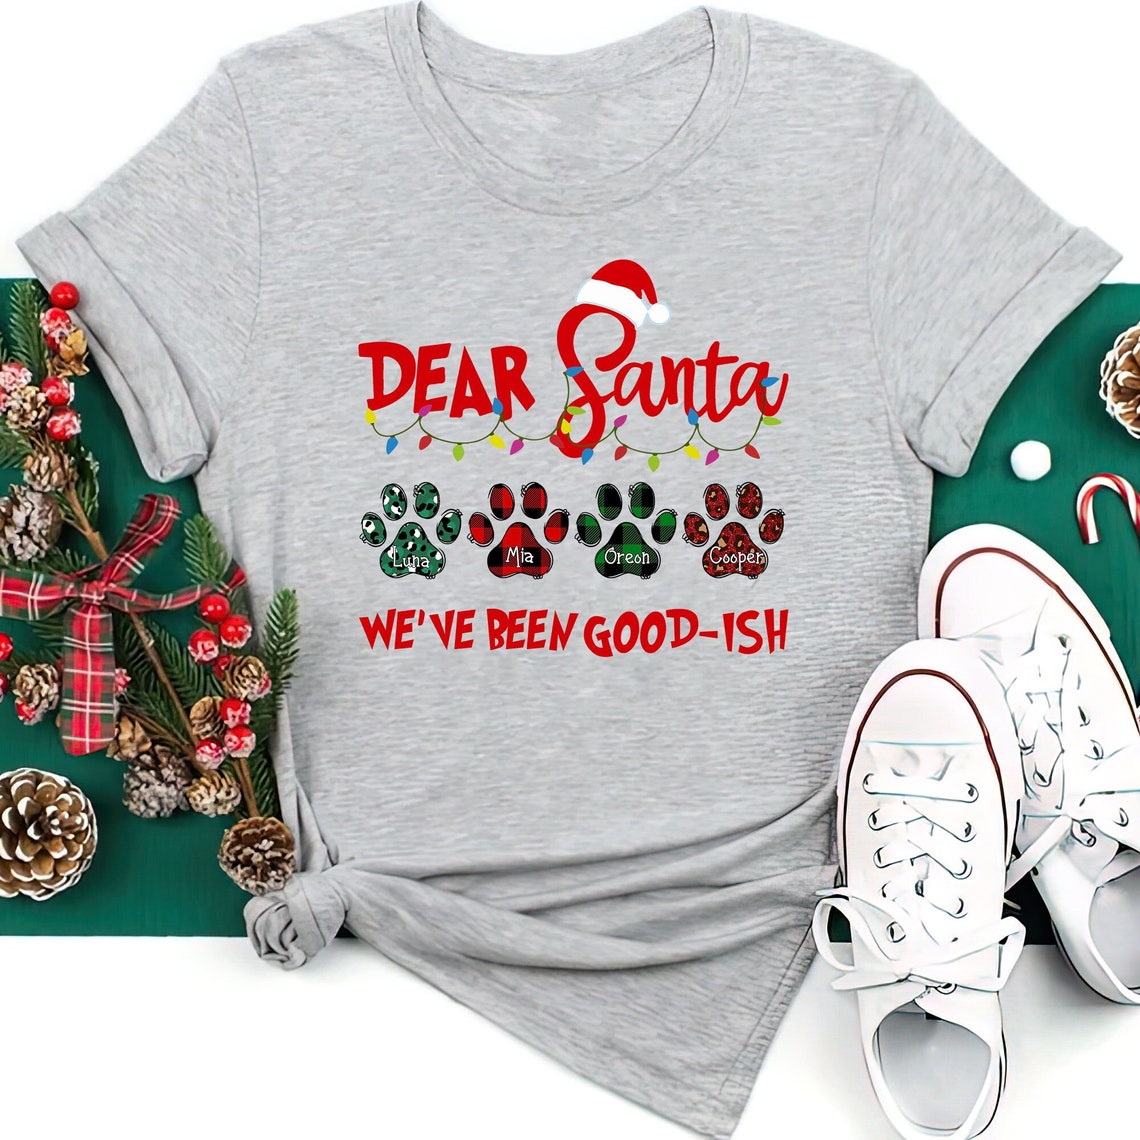 Dear Santa Custom Pet Shirt